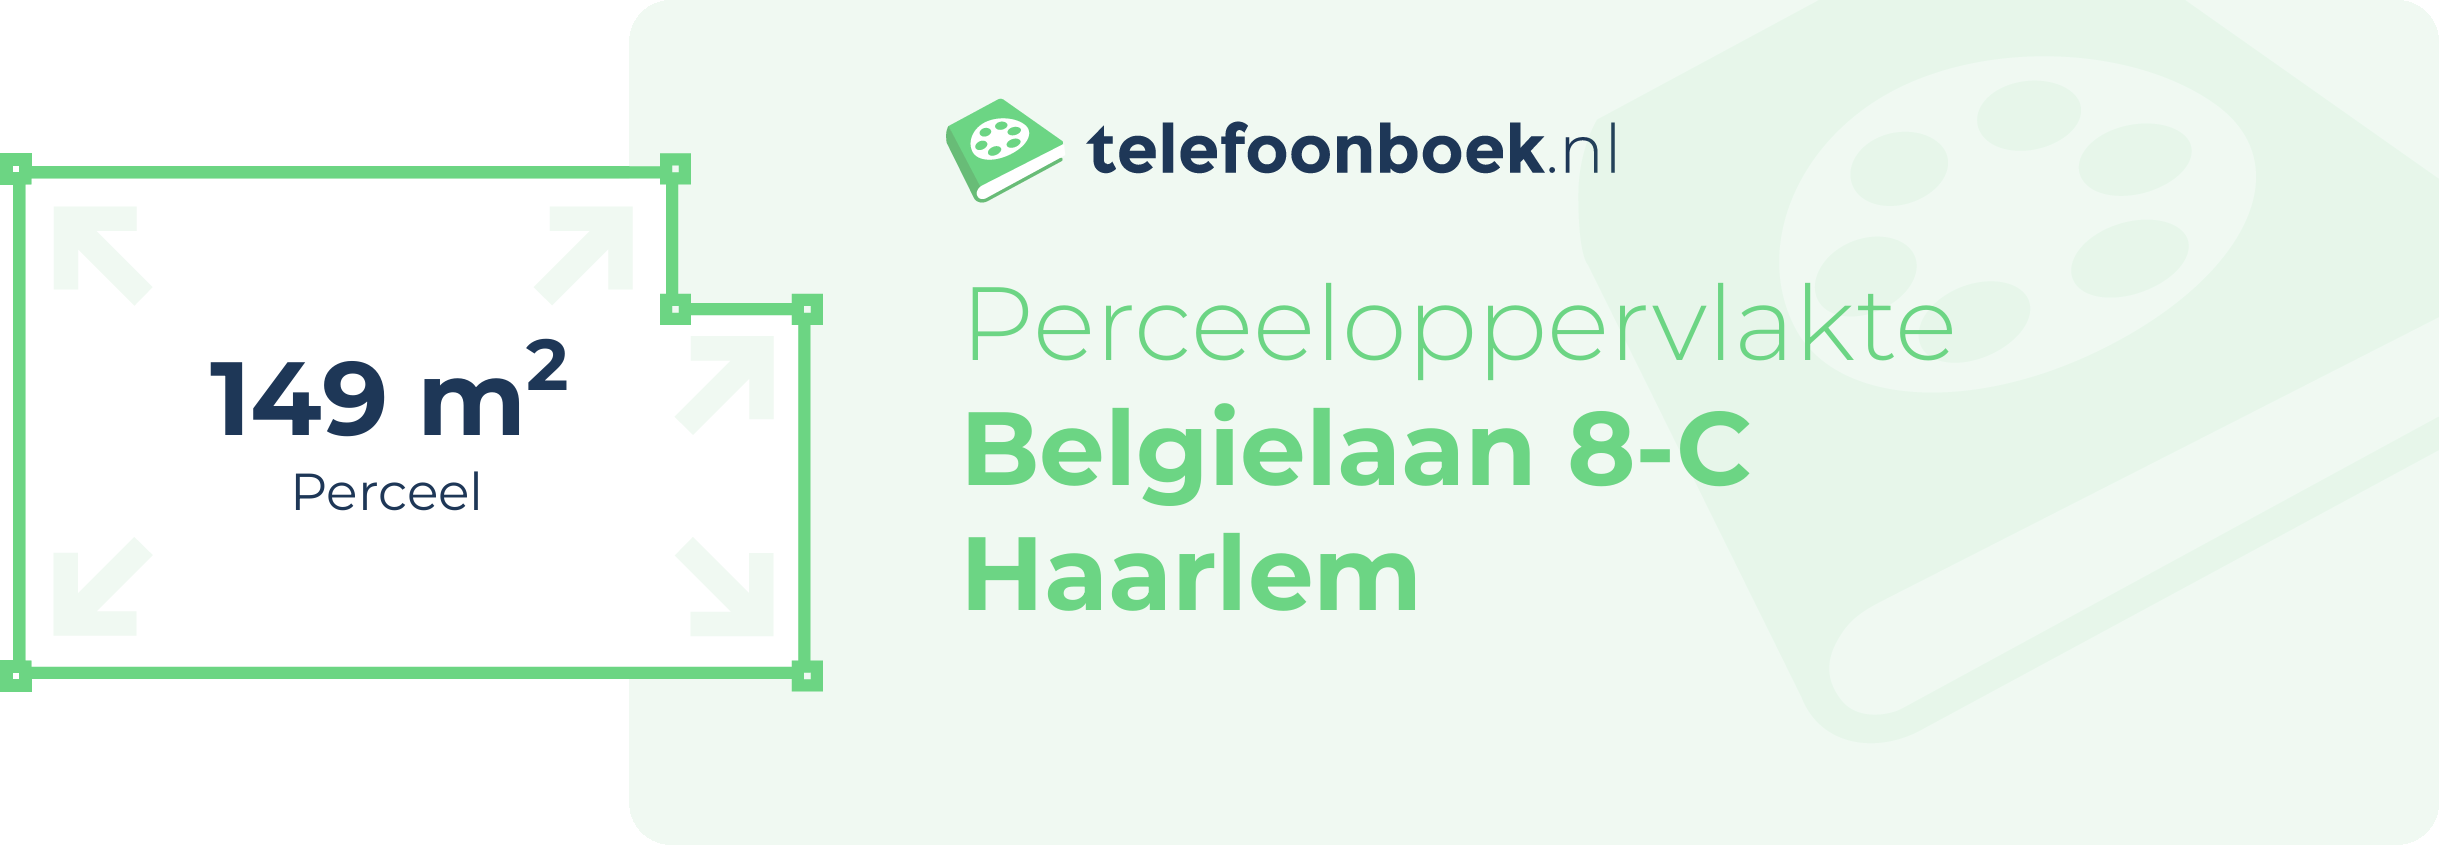 Perceeloppervlakte Belgielaan 8-C Haarlem